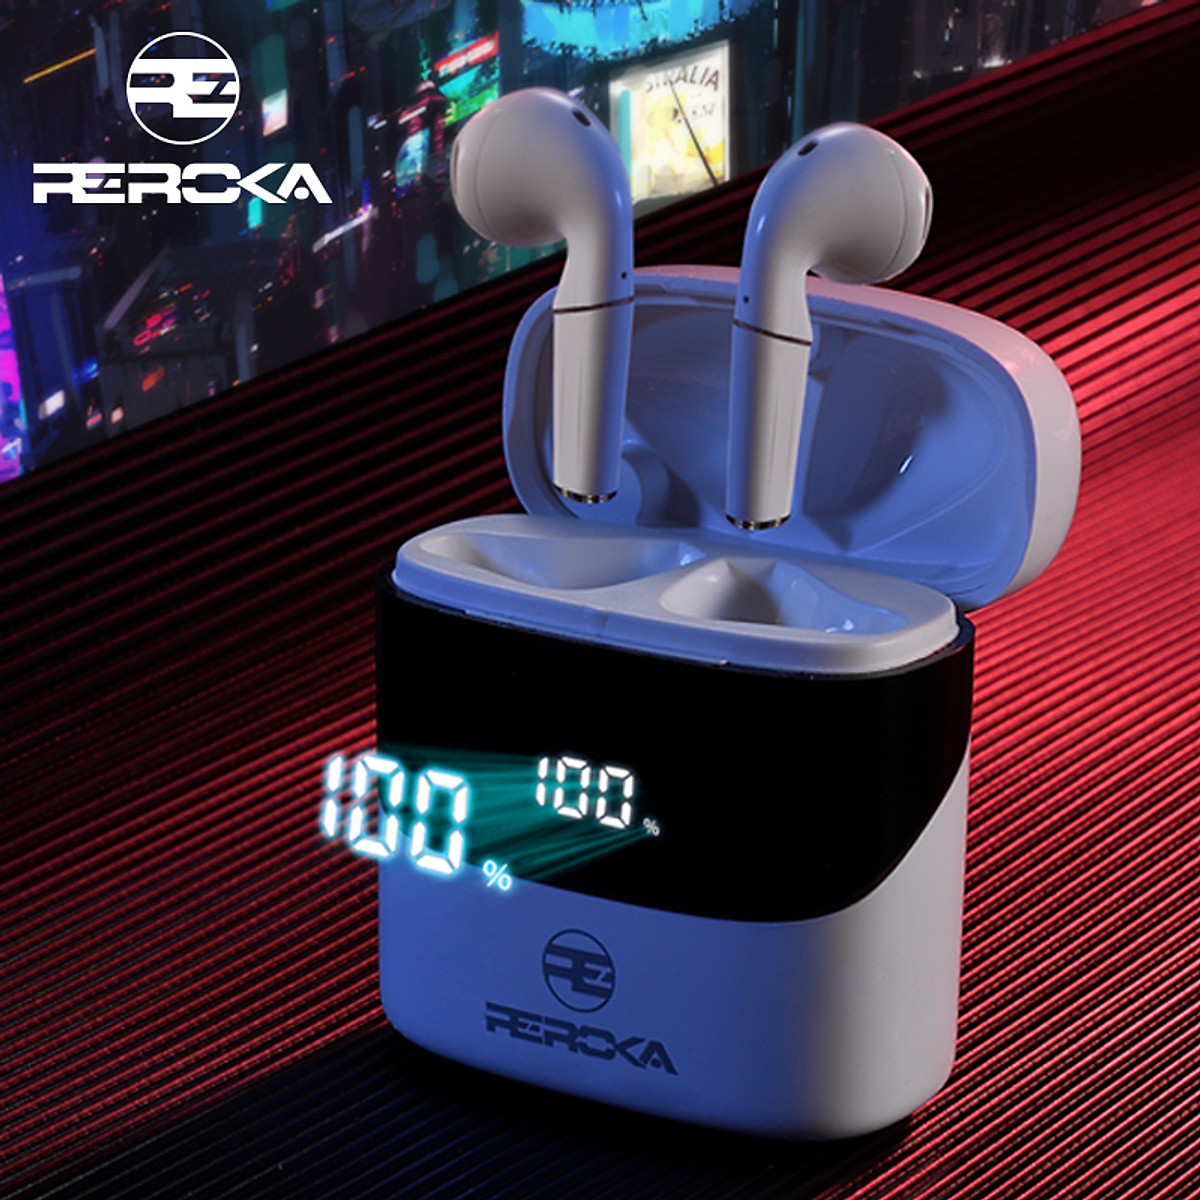 Tai Nghe True Wireless  REROKA-CYBORG Bluetooth V5.0, đeo êm tai, âm thanh sống động, hộp sạc có màn hình led hiển thị  - Hàng chính hãng